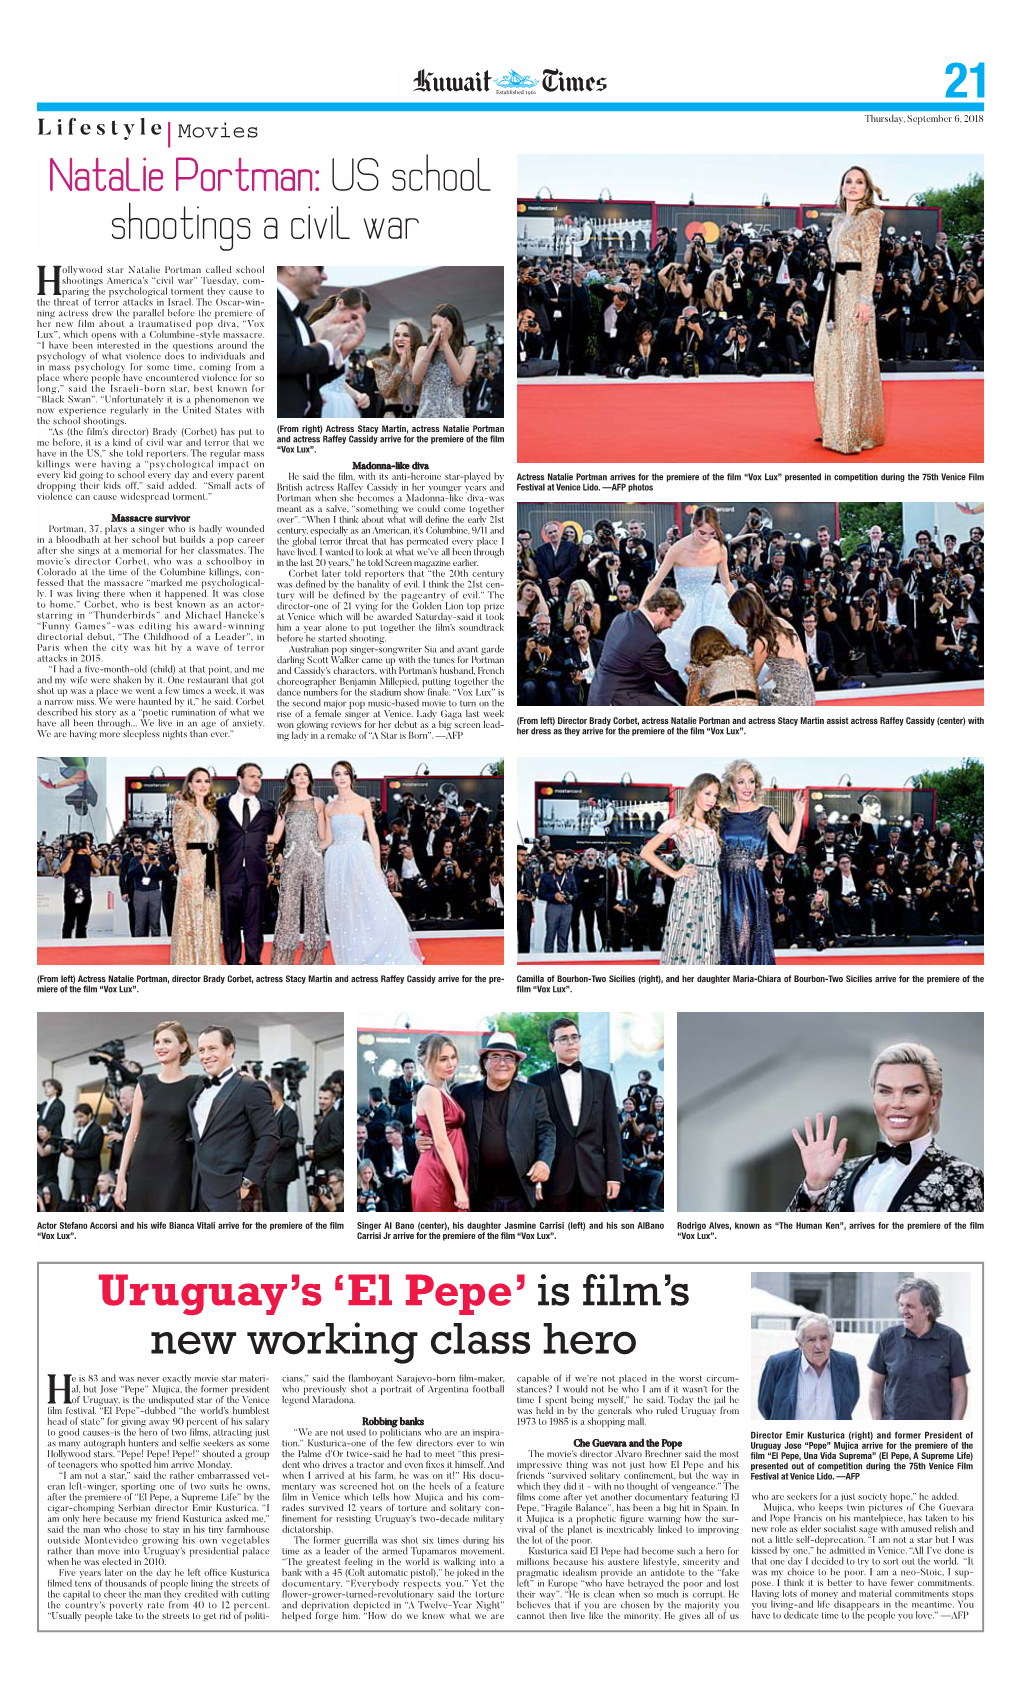 El Pepe’ Is Film’S New Working Class Hero